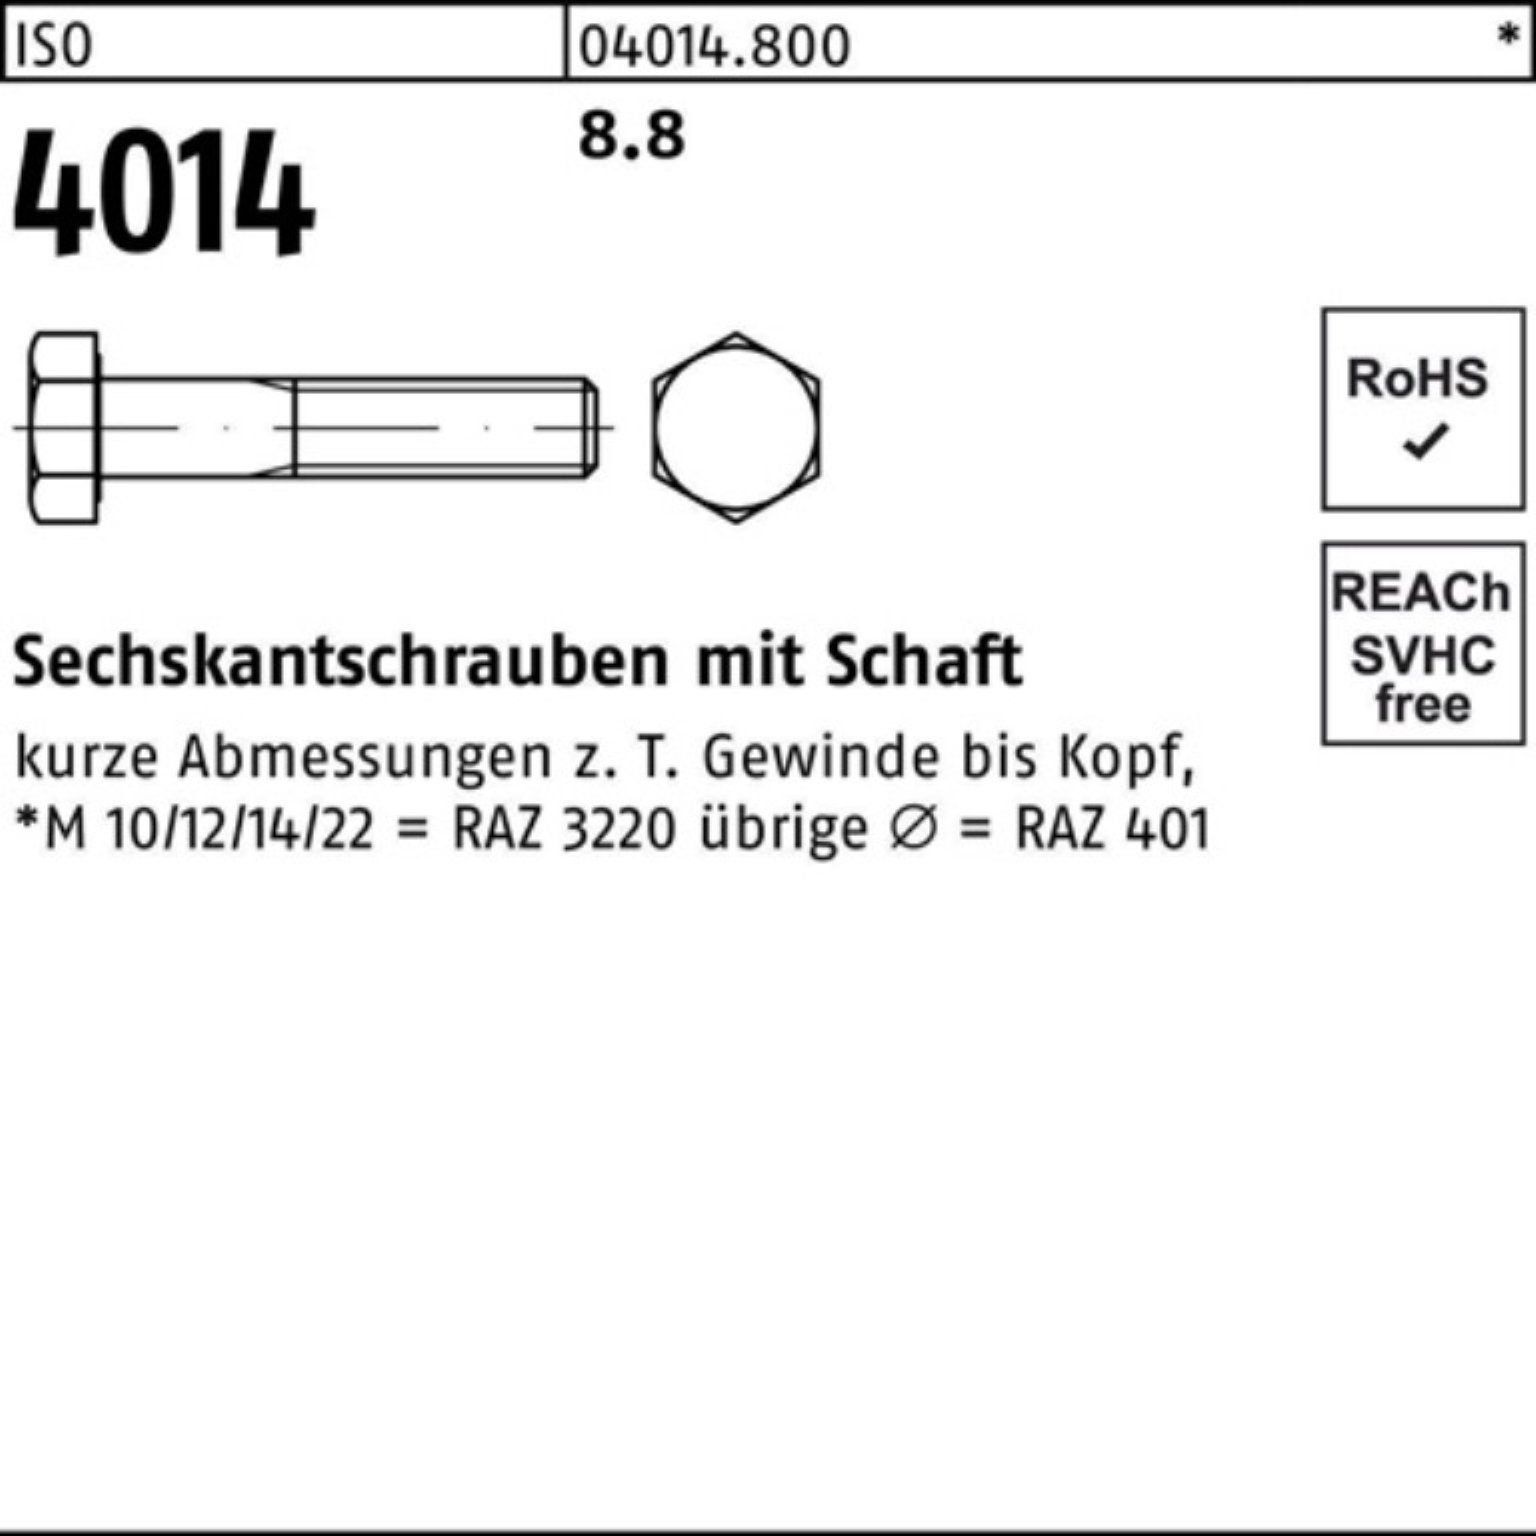 Bufab Sechskantschraube 100er Pack Sechskantschraube 1 Stück M24x Schaft 360 8.8 4014 ISO ISO